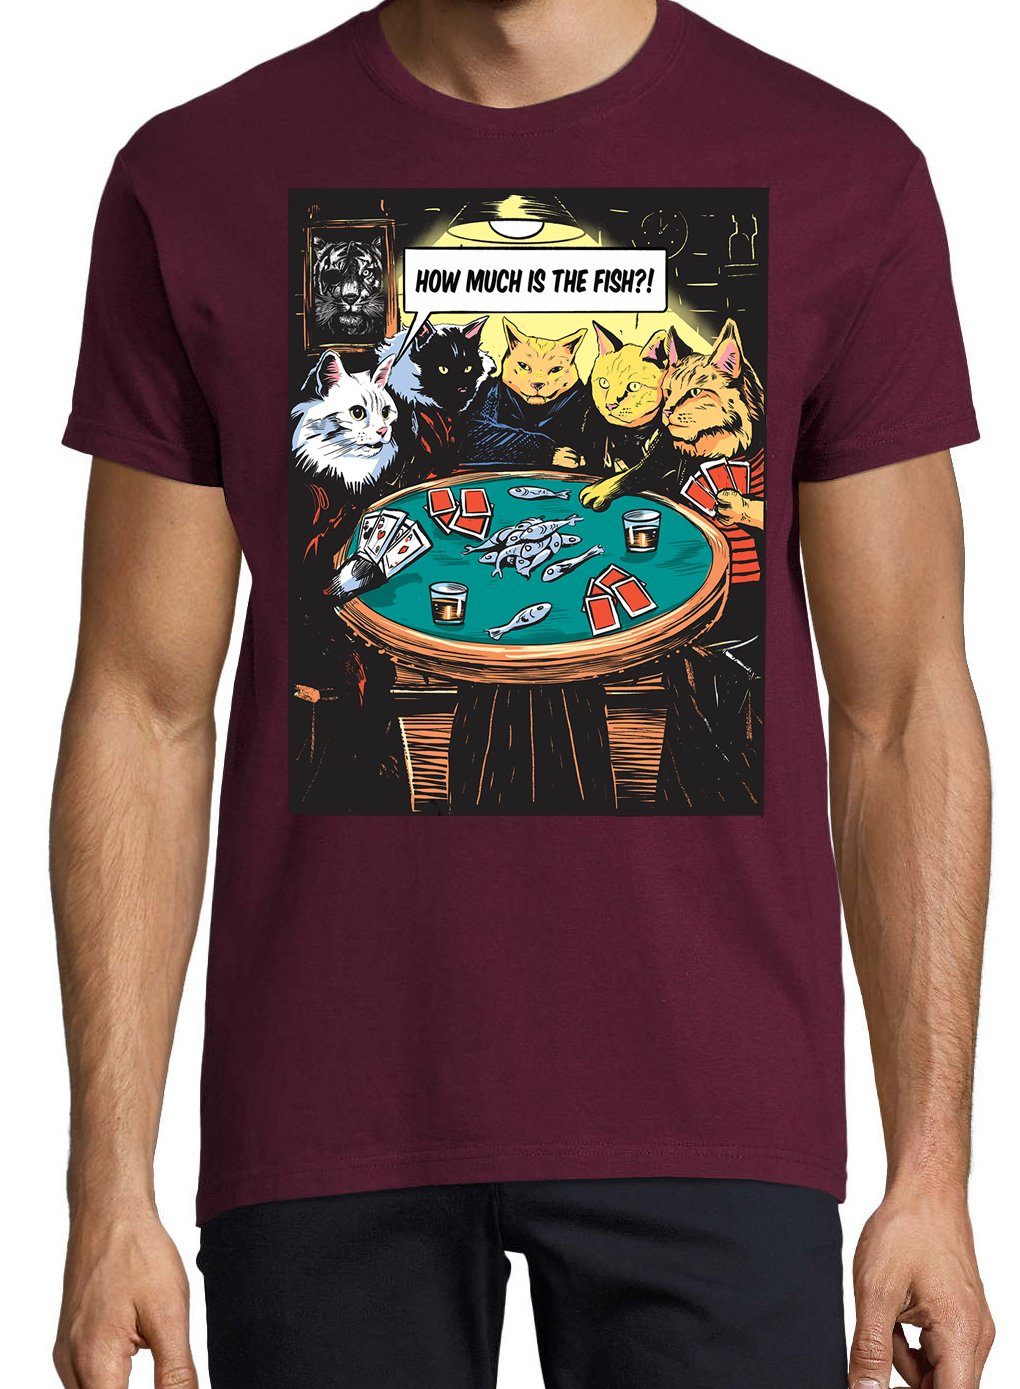 Herren Frontprint The T-Shirt Burgund Much trendigem mit Shirt Designz Is "How Poker Youth Fish?"